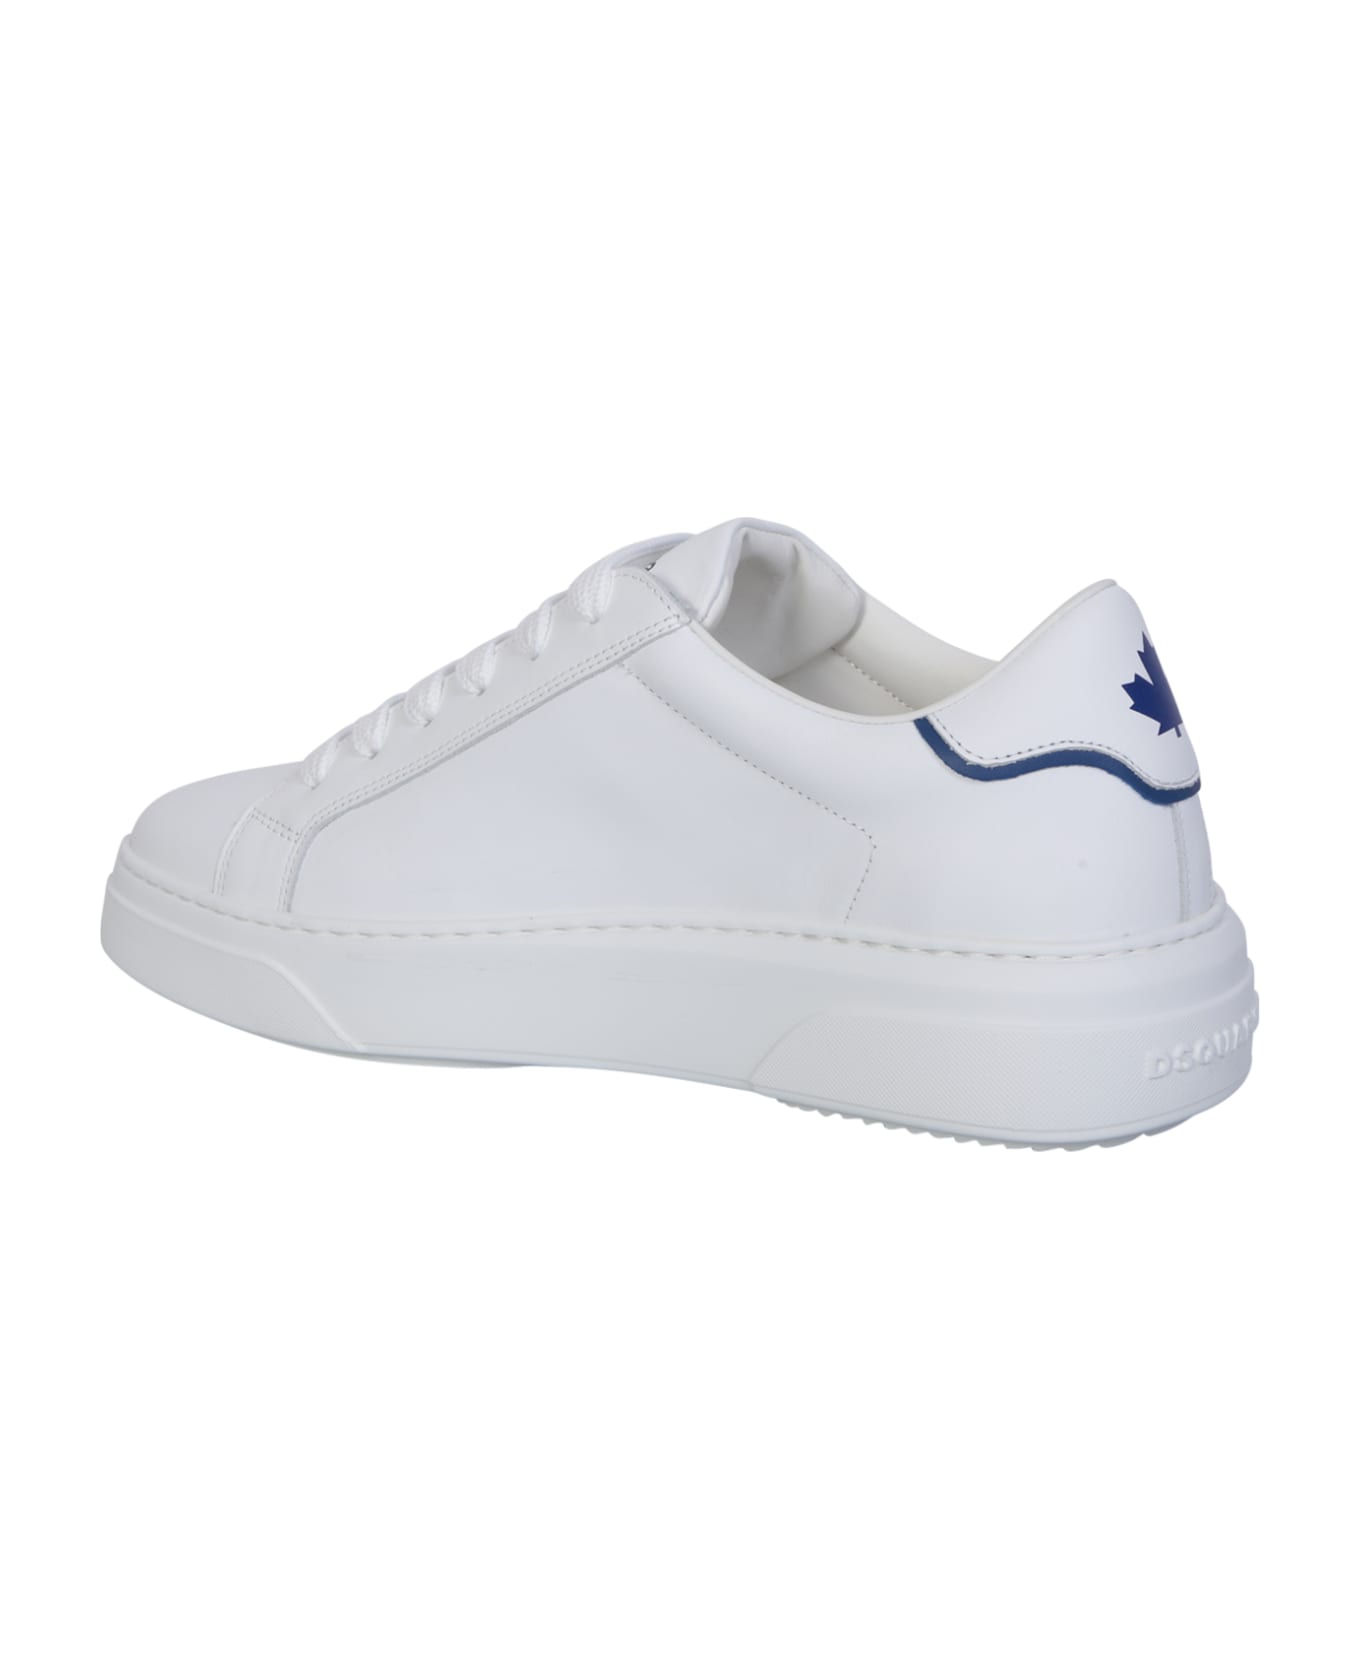 Dsquared2 Bumper White/blue Sneakers - White